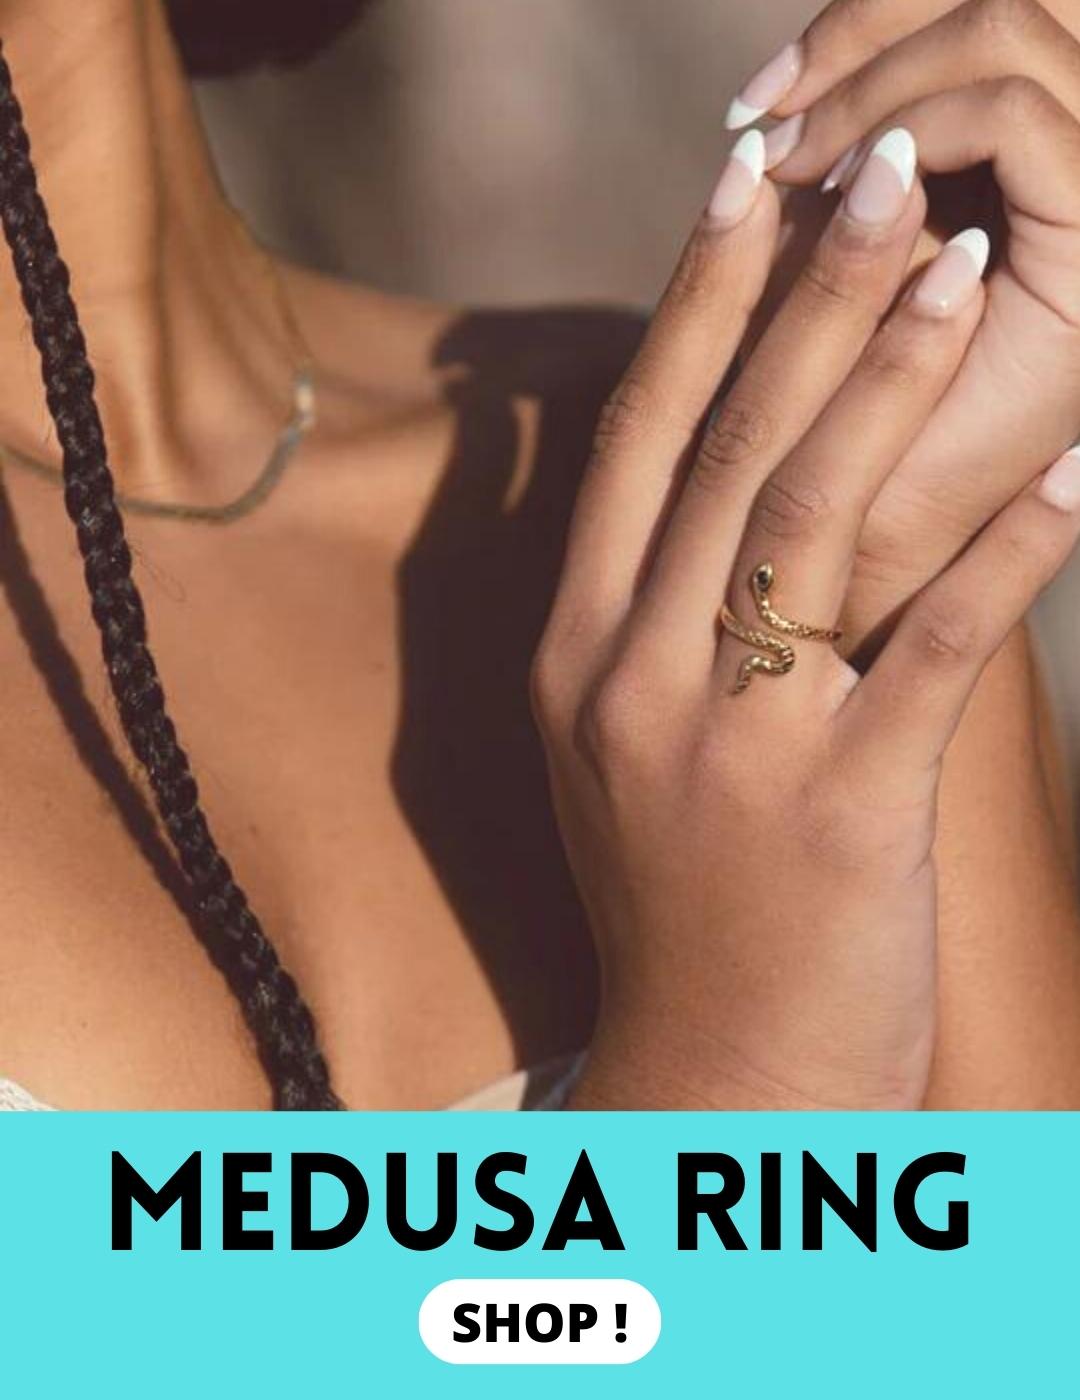 Meaning of Medusa ring